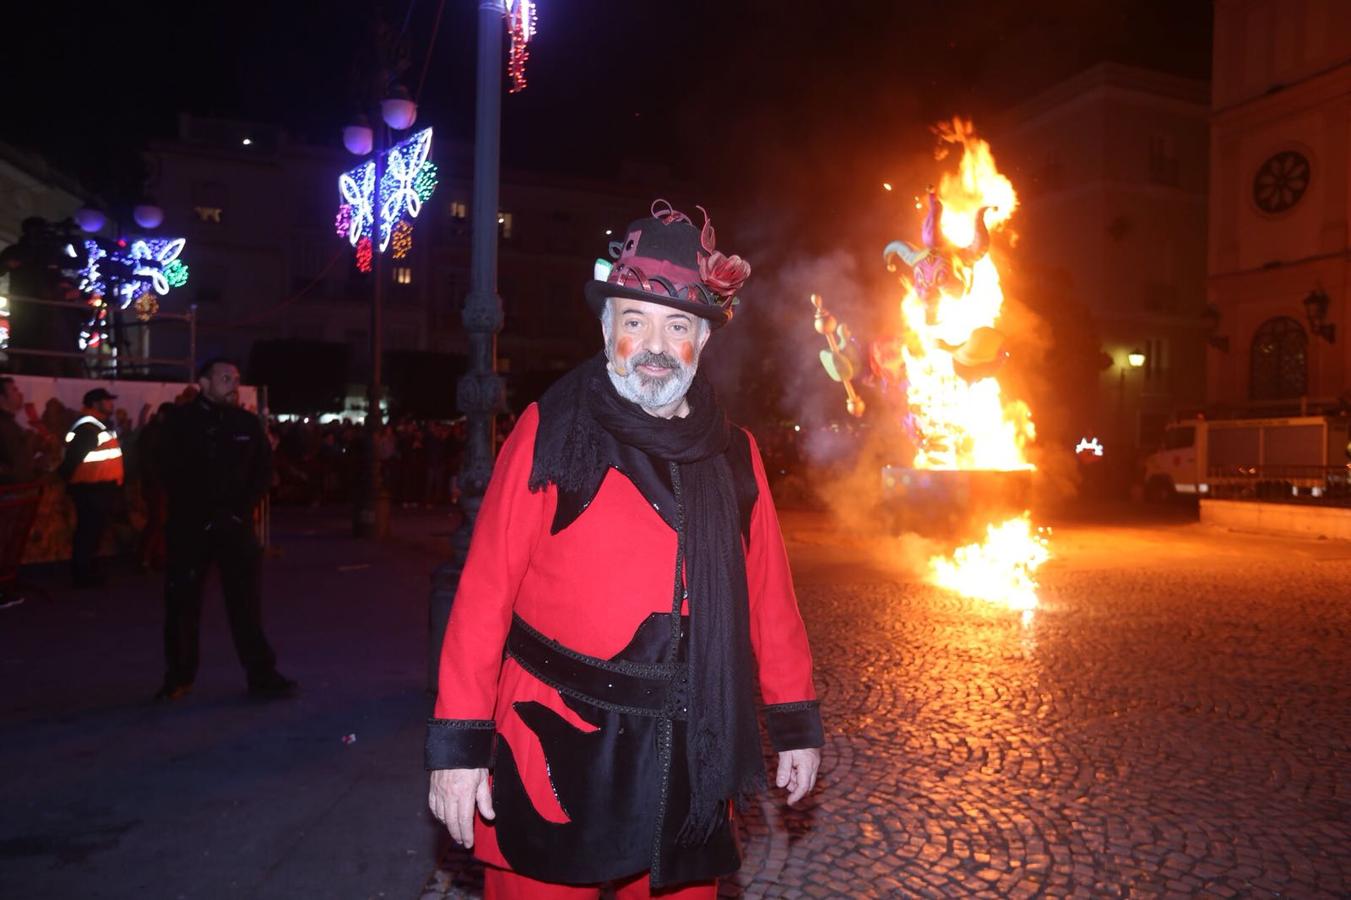 FOTOS: El Dios Momo arde en San Antonio